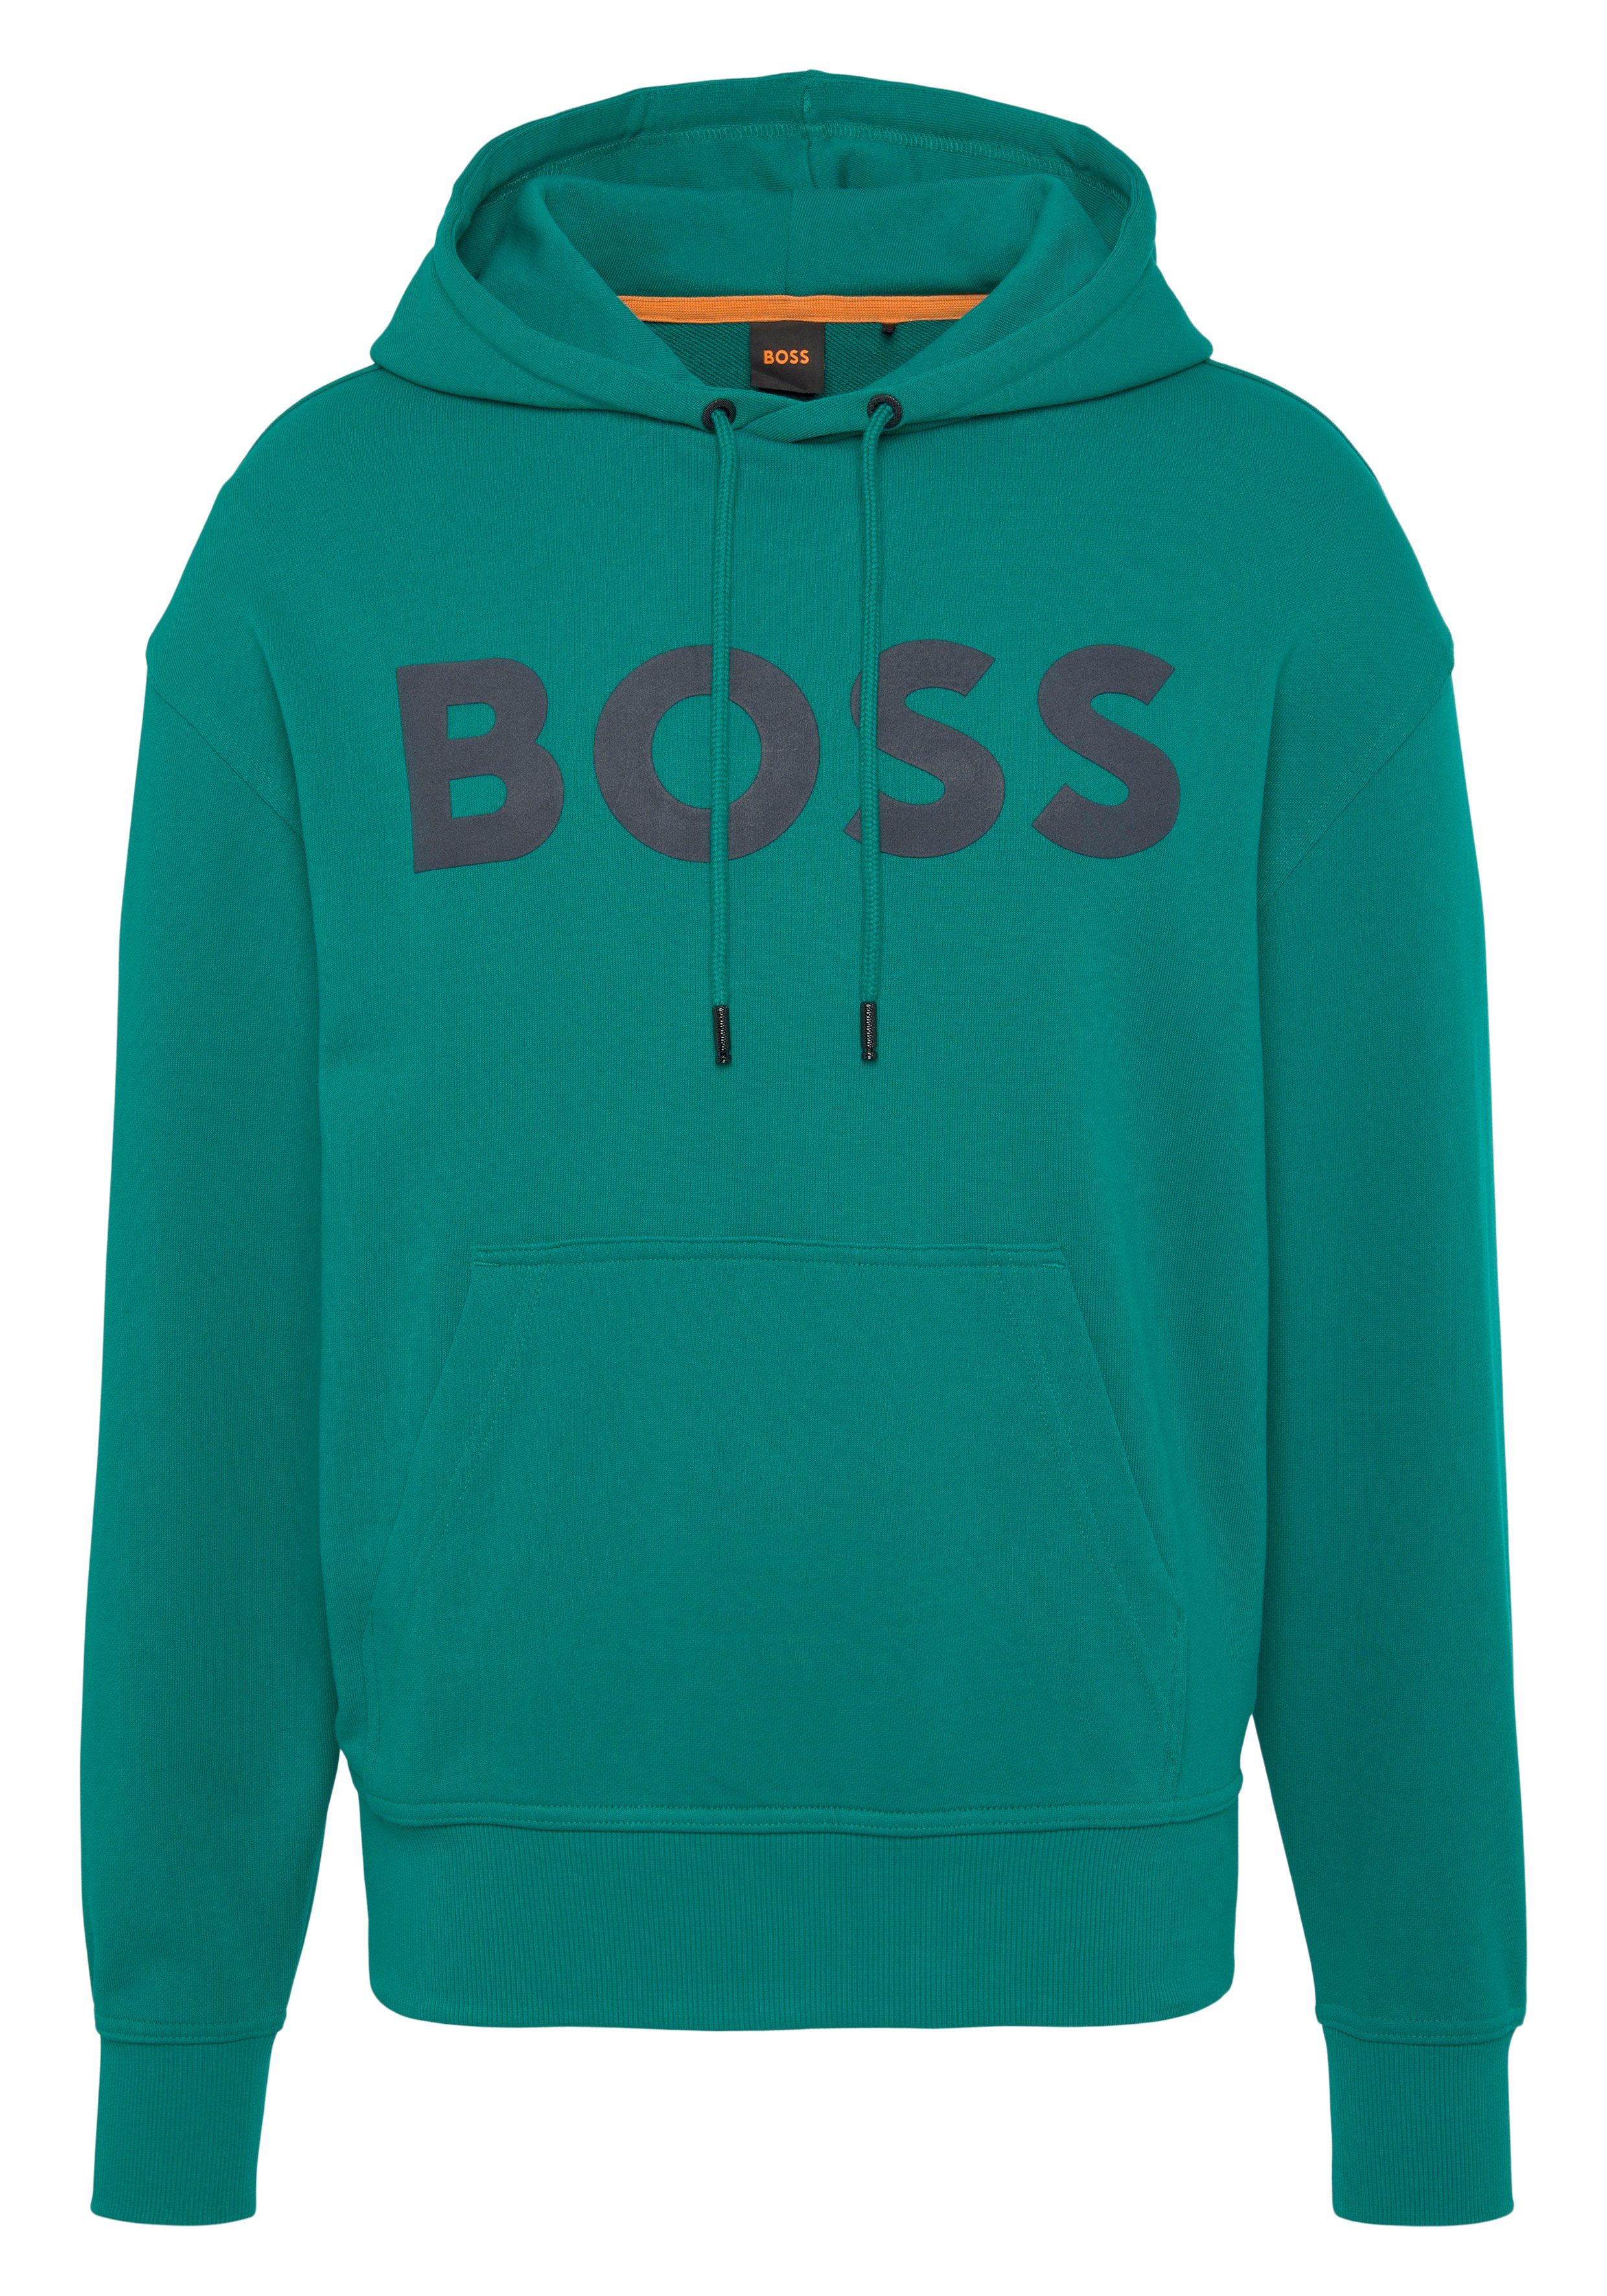 HUGO BOSS ORANGE Sweatshirt WebasicHood mit großem BOSS Print auf der Brust Dark Green